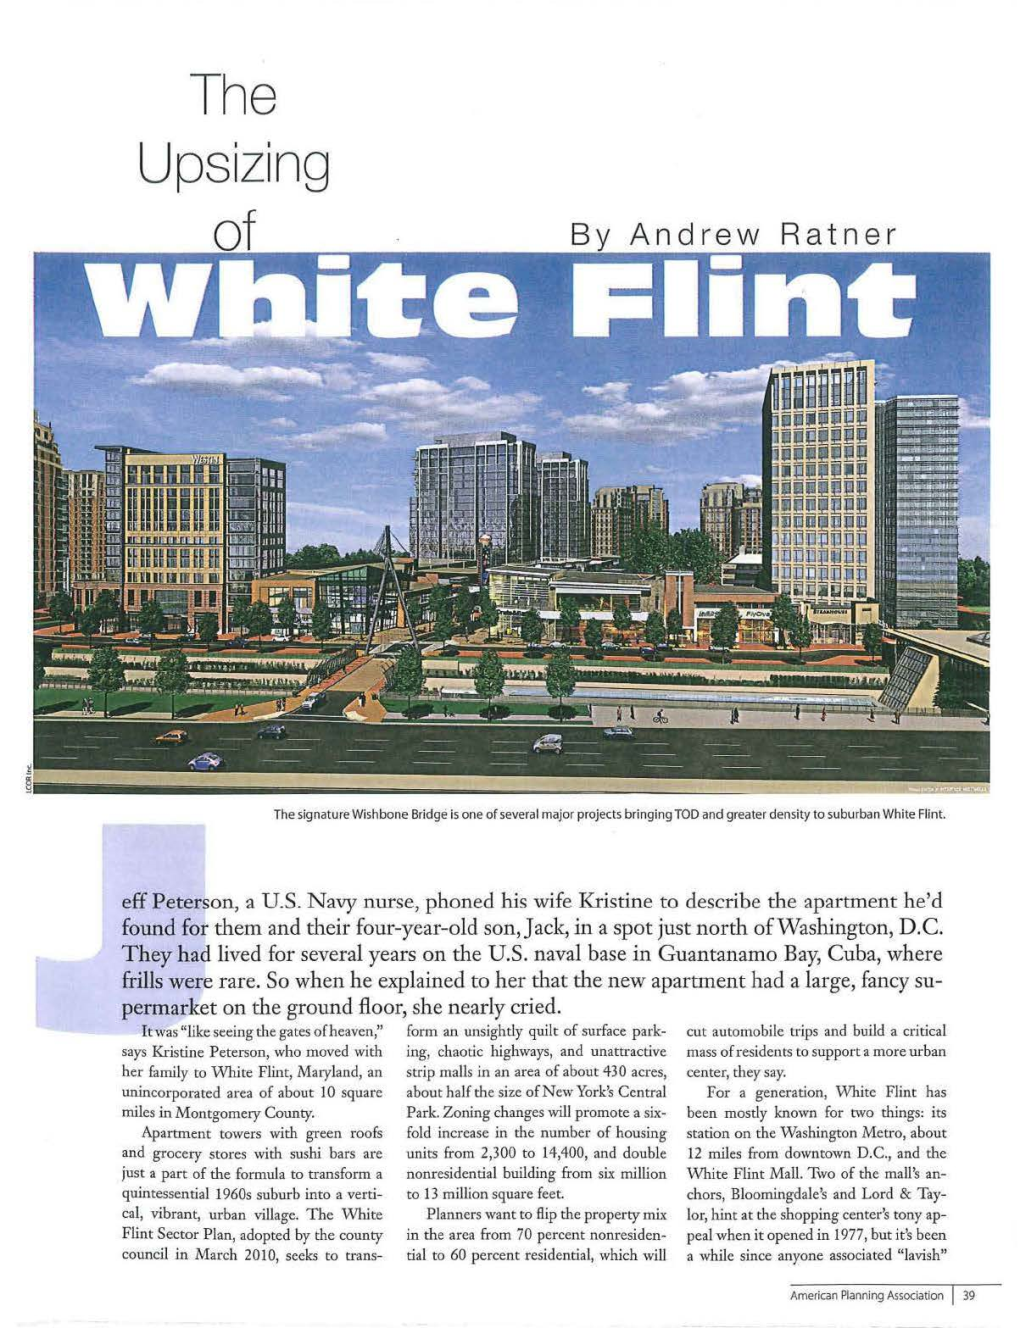 The Upsizing of White Flint